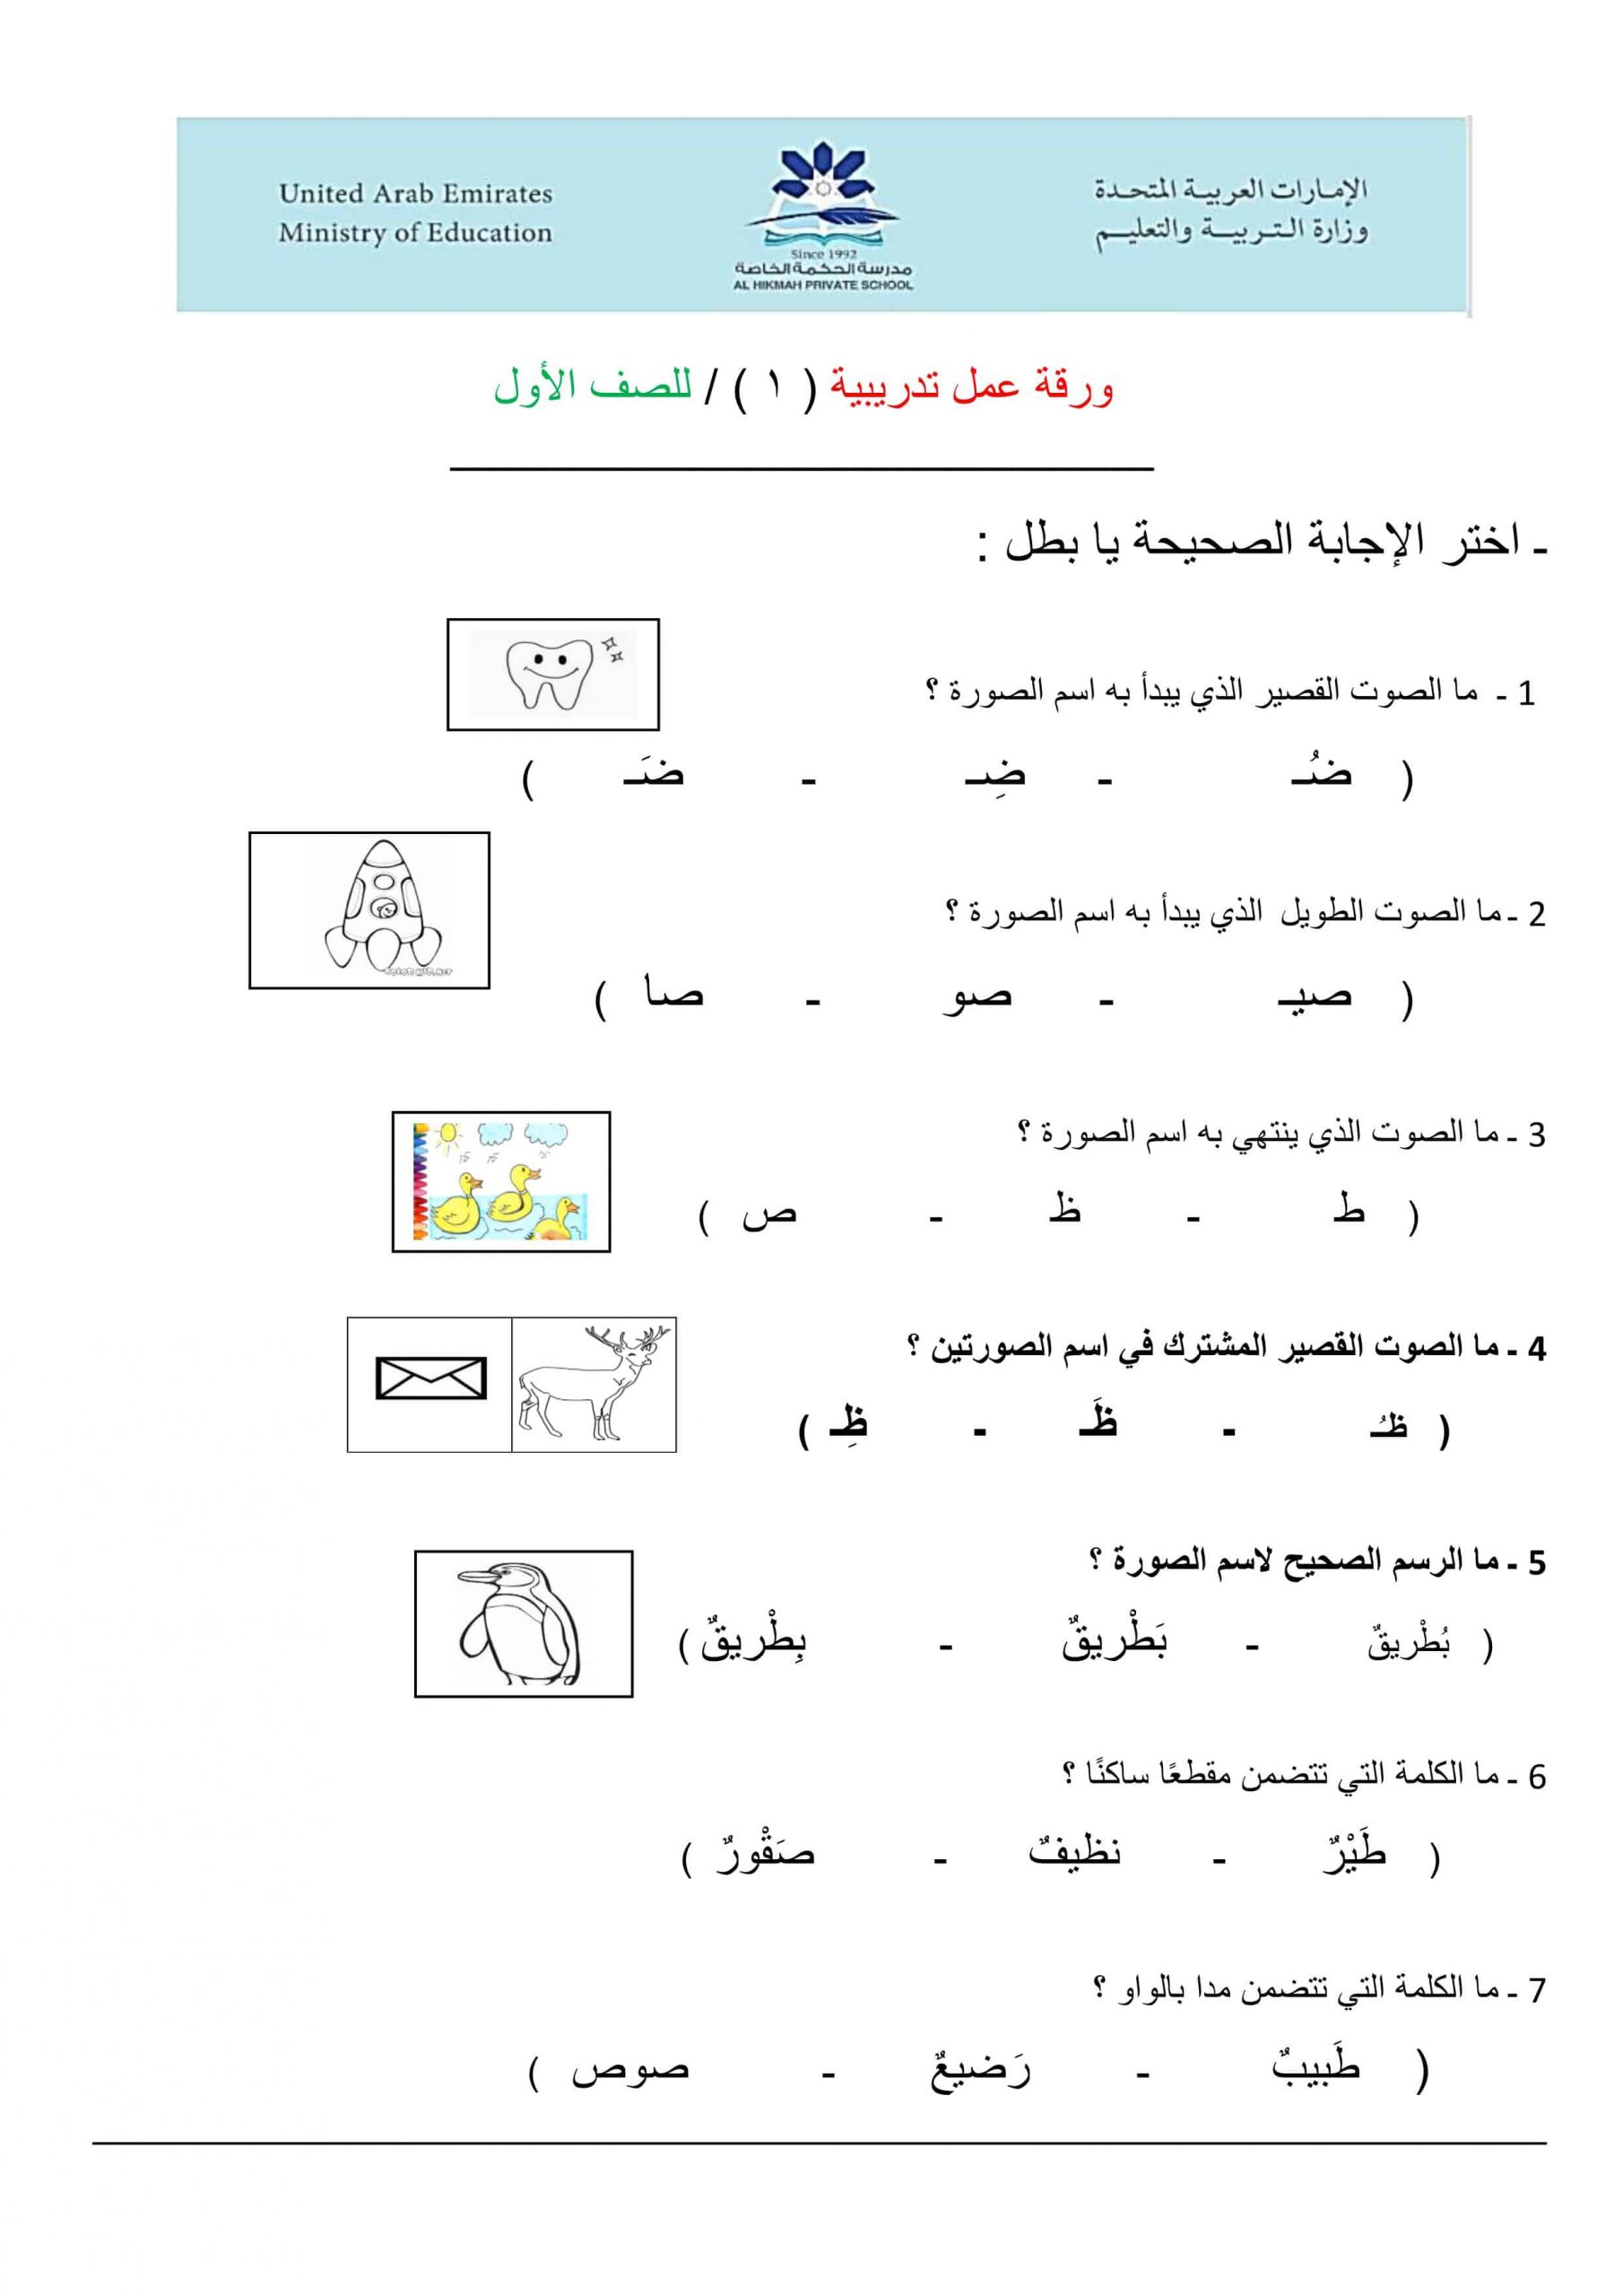 ورقة عمل تدريبات للحروف الفصل الدراسي الثاني الصف الأول مادة اللغة العربية 